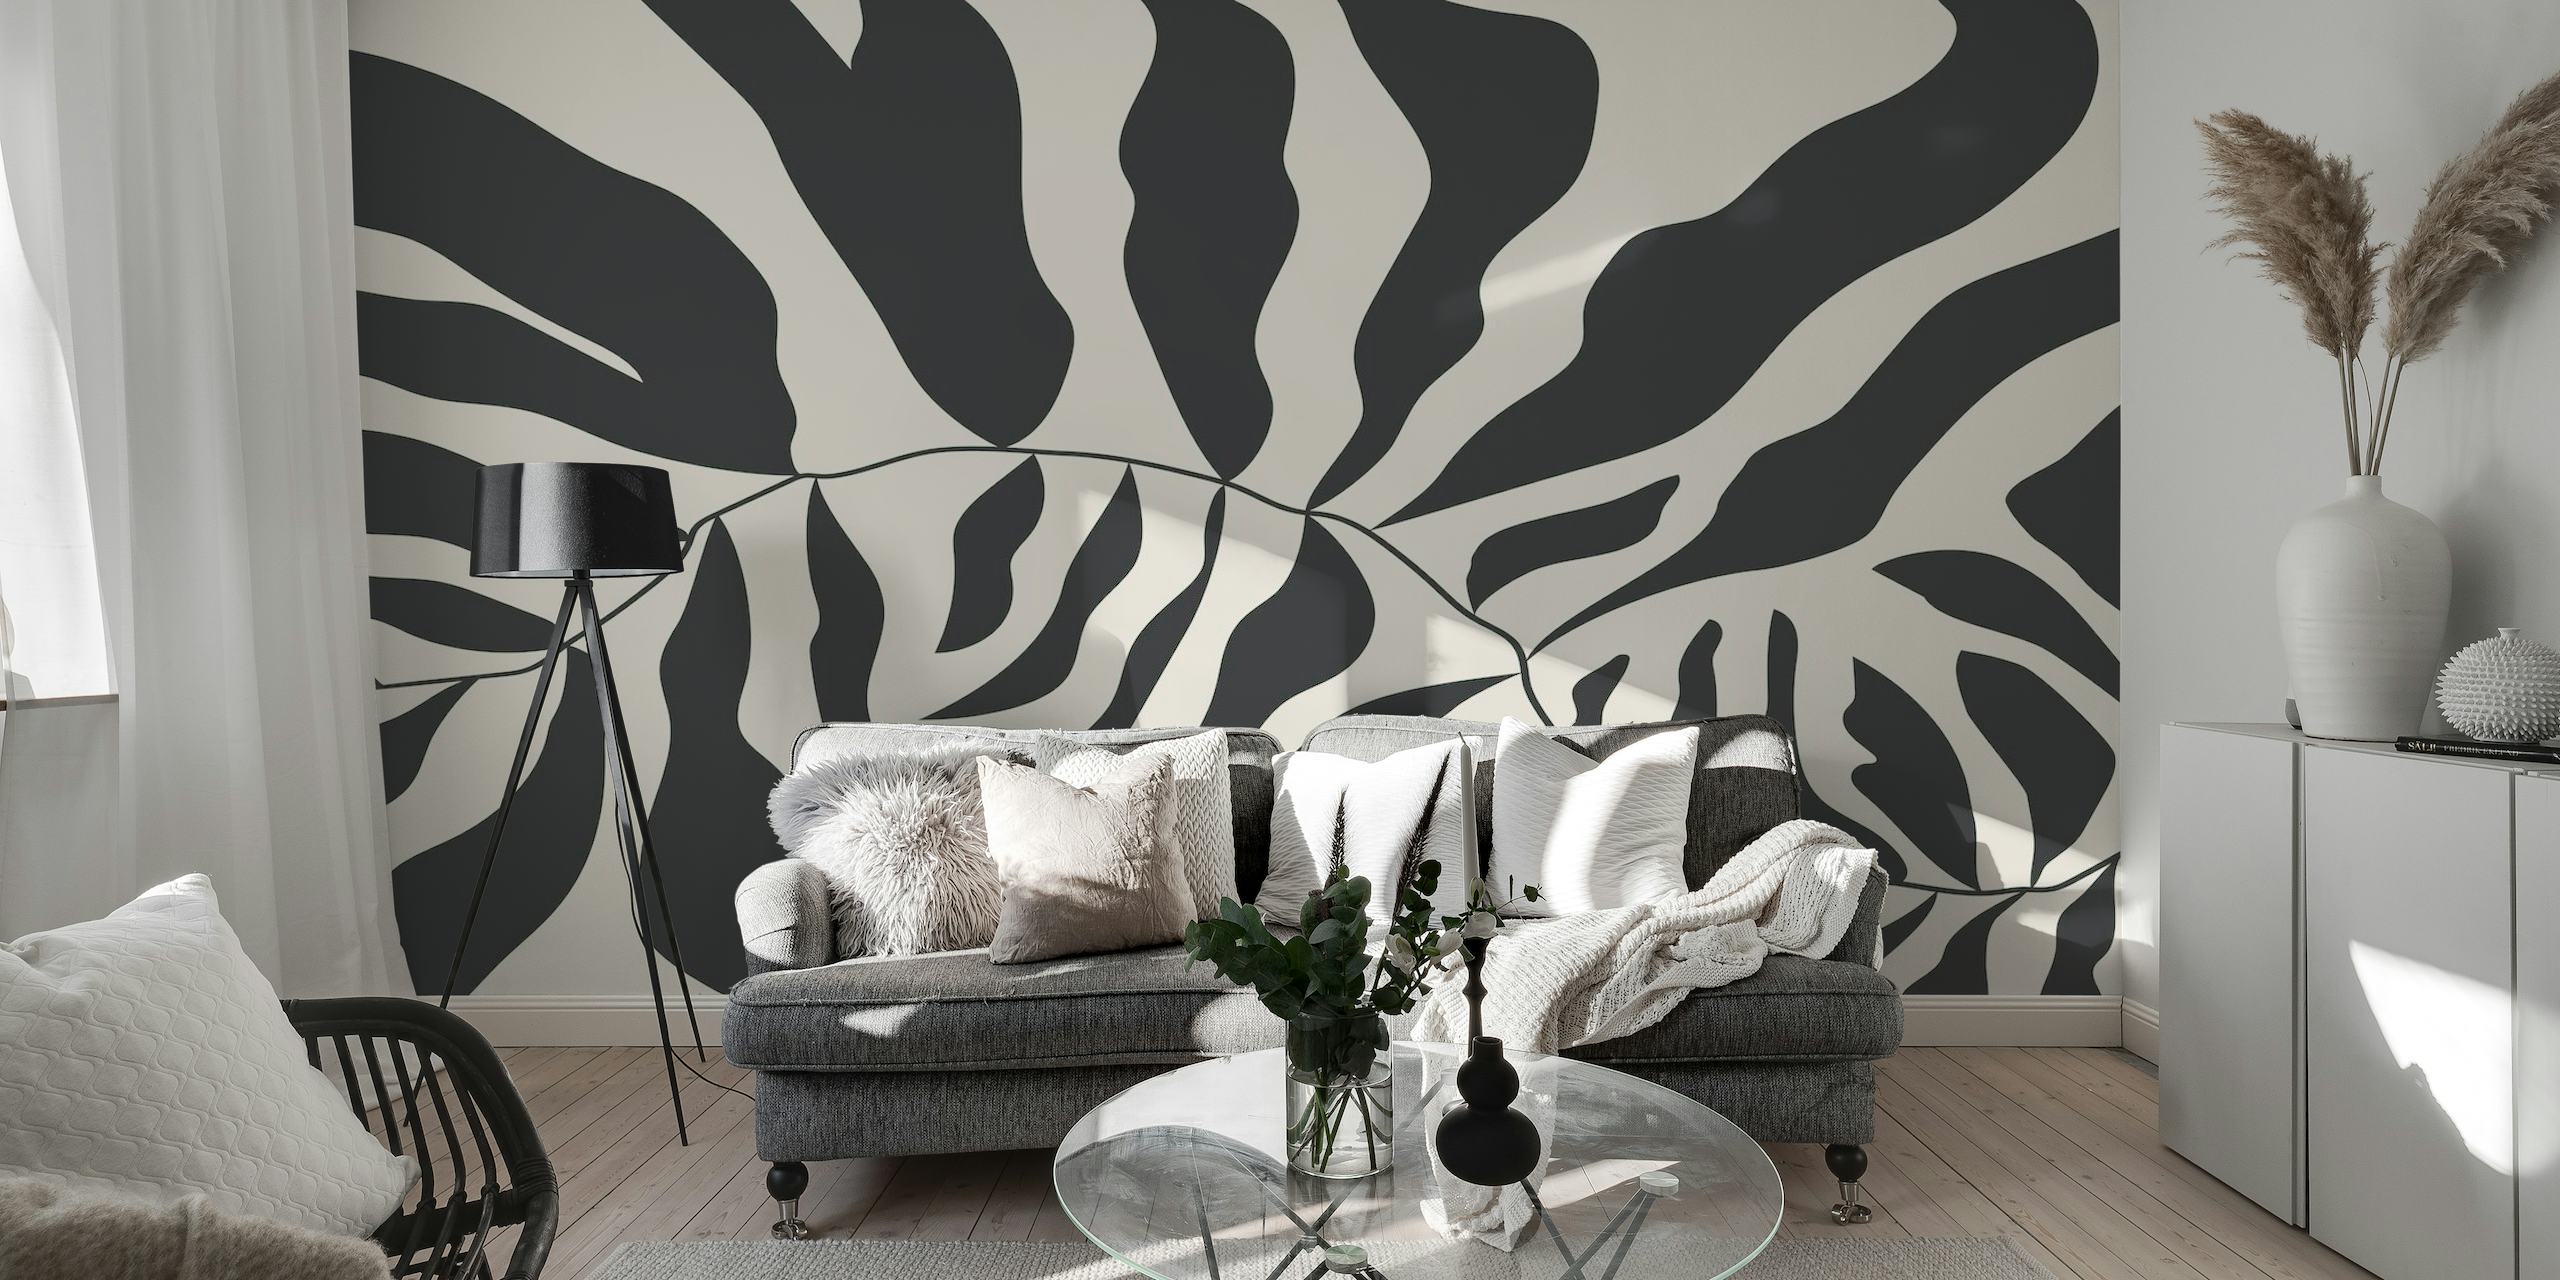 Černobílá abstraktní nástěnná malba ve stylu Matisse zobrazující organické tvary